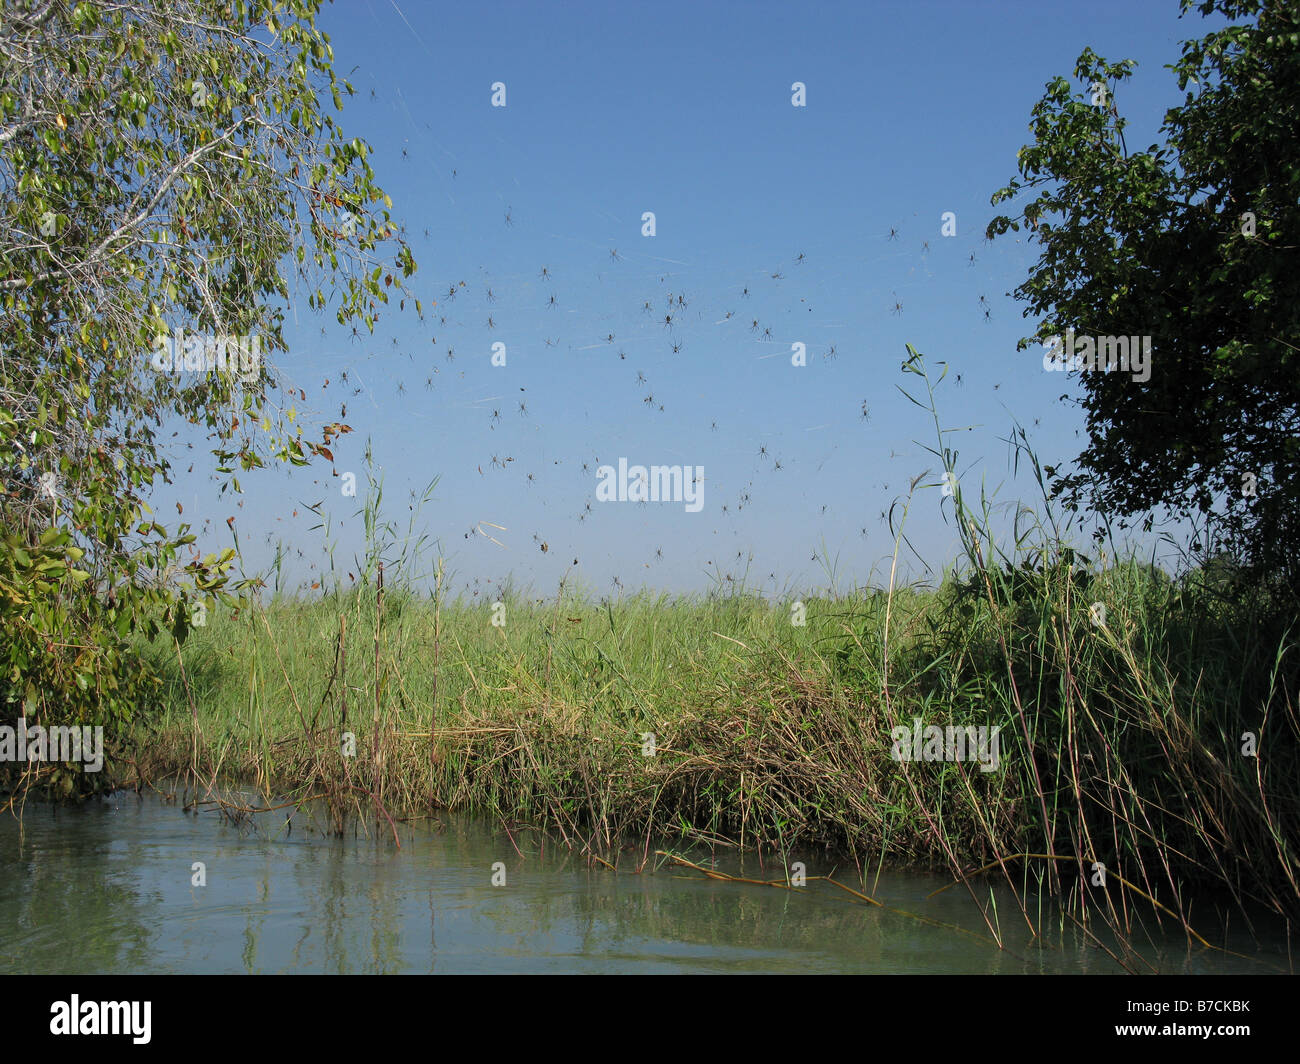 D'énormes araignées web sur rives de la rivière Luapula partie du fleuve Congo dans la province du Katanga en République démocratique du Congo Banque D'Images